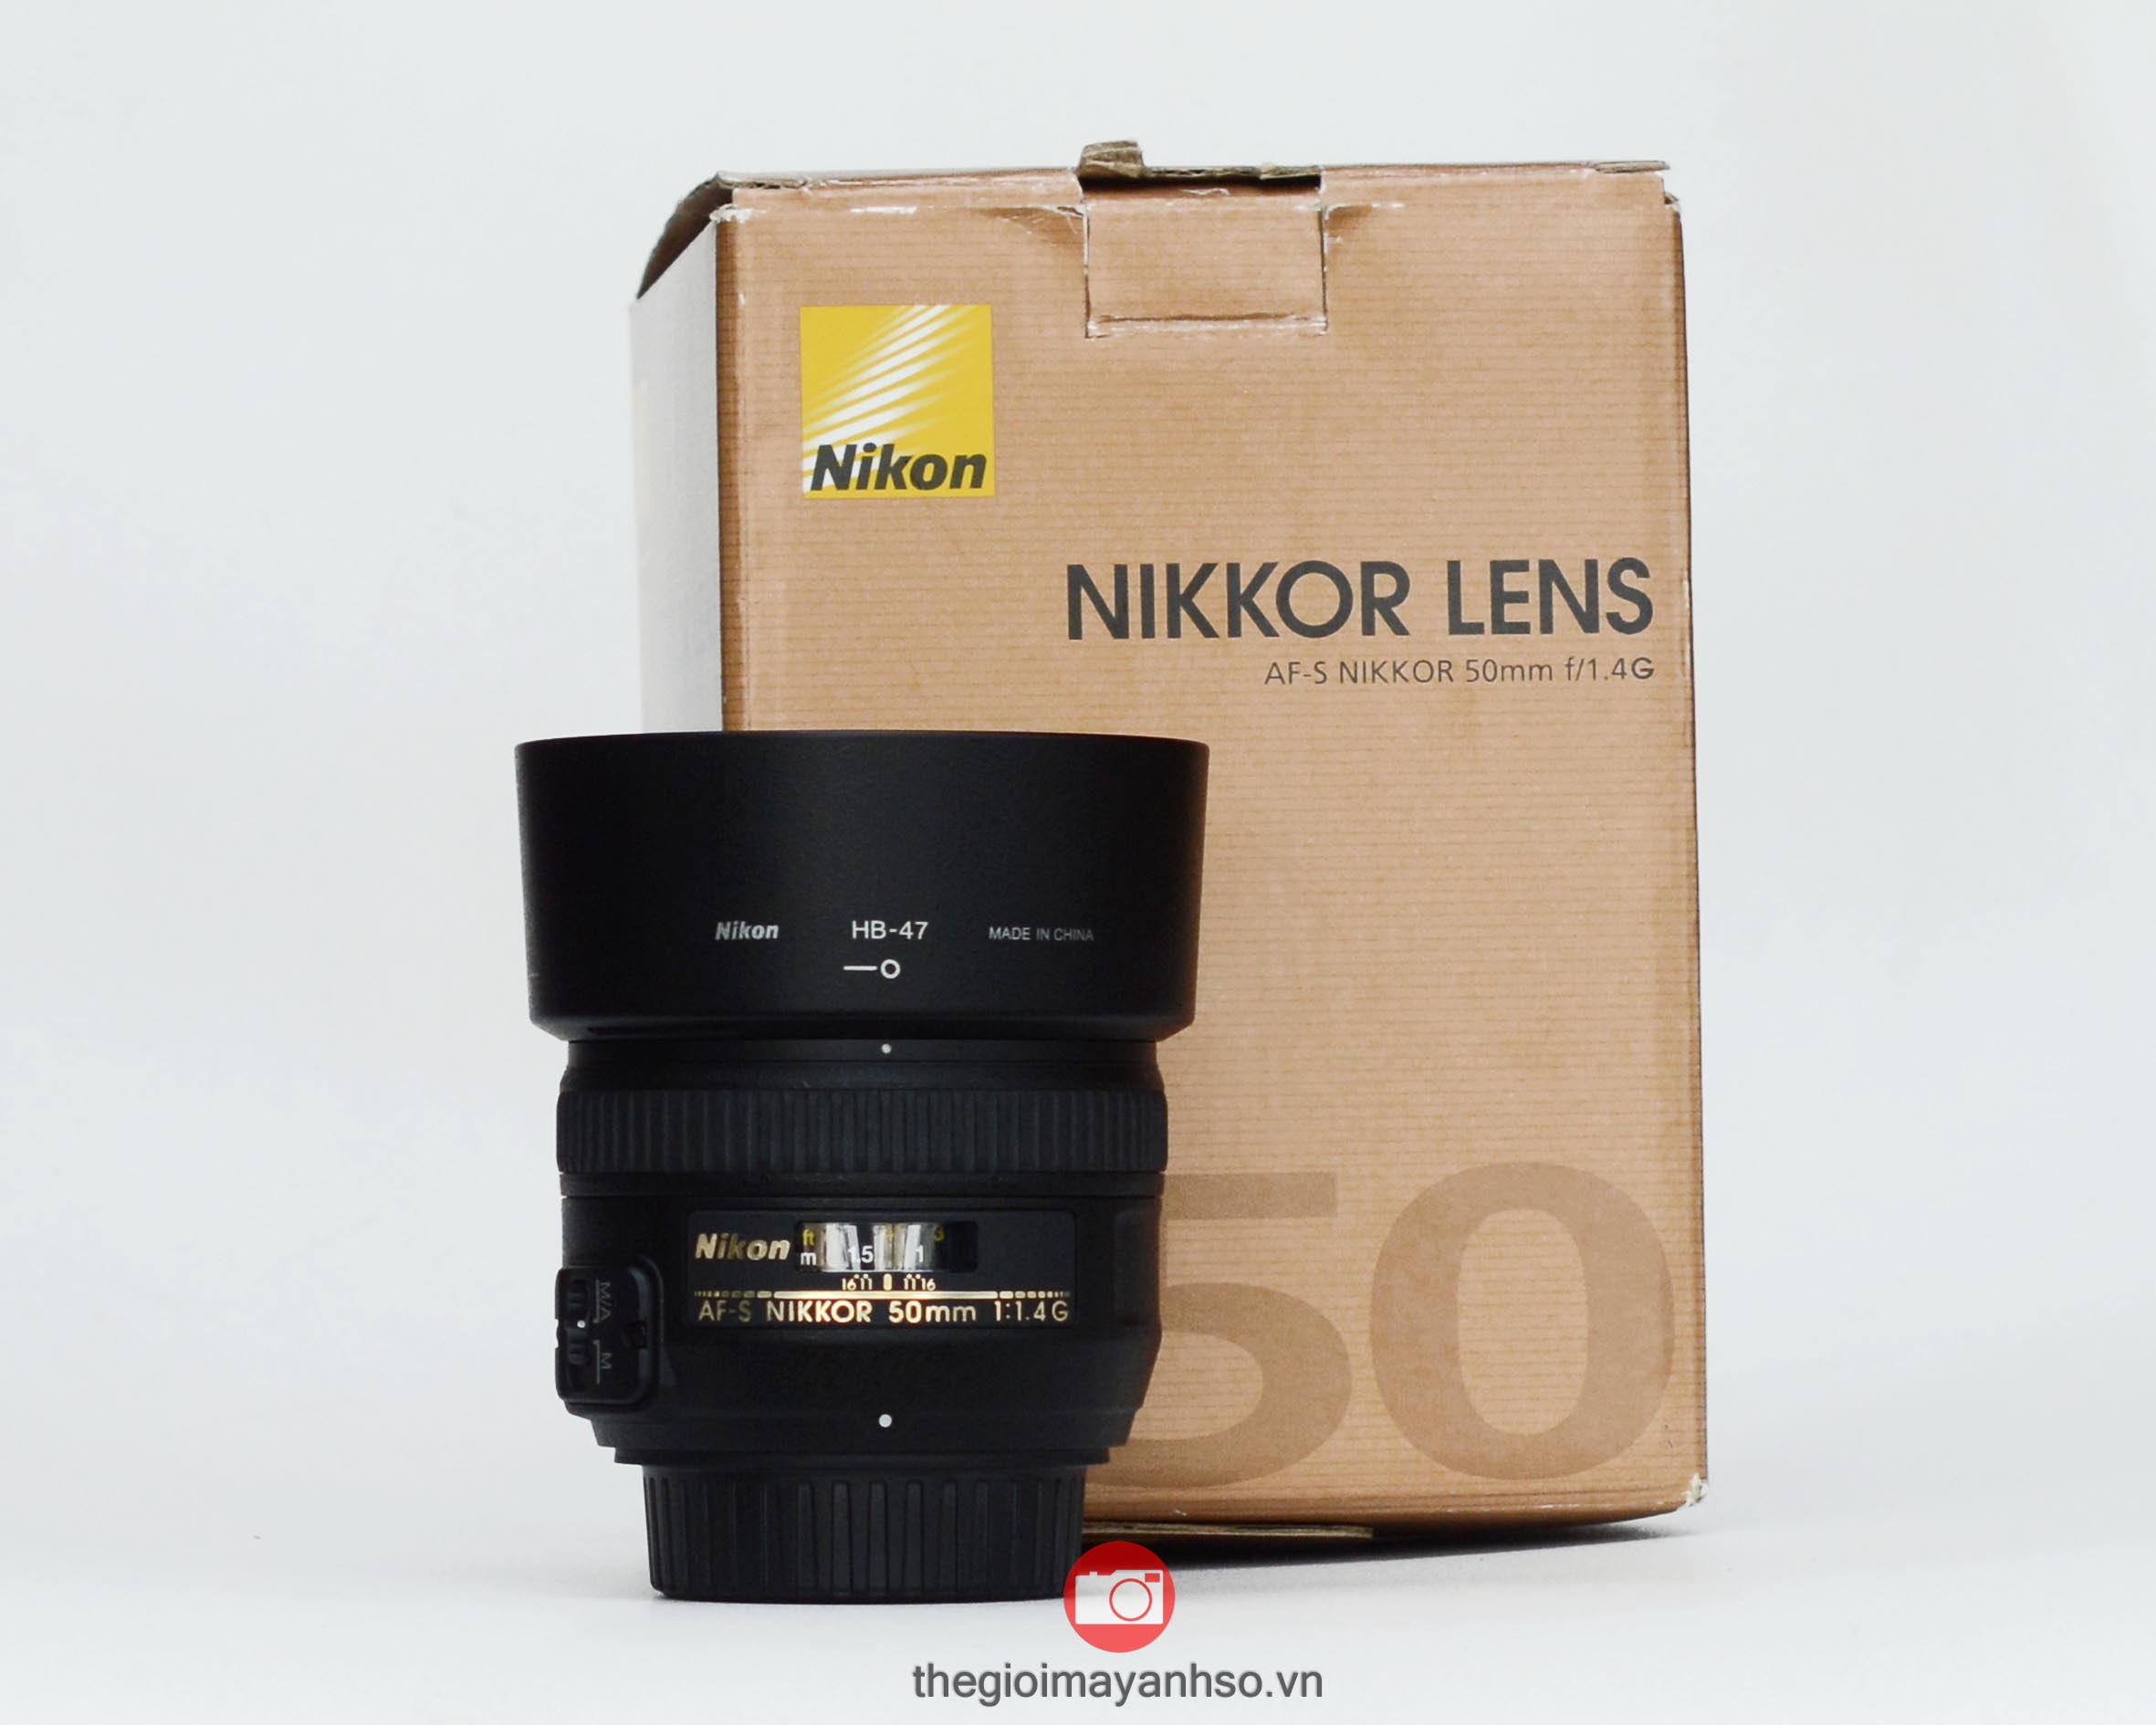 Nikon 50mm f/1.4 G AF-S Thế giới máy ảnh số